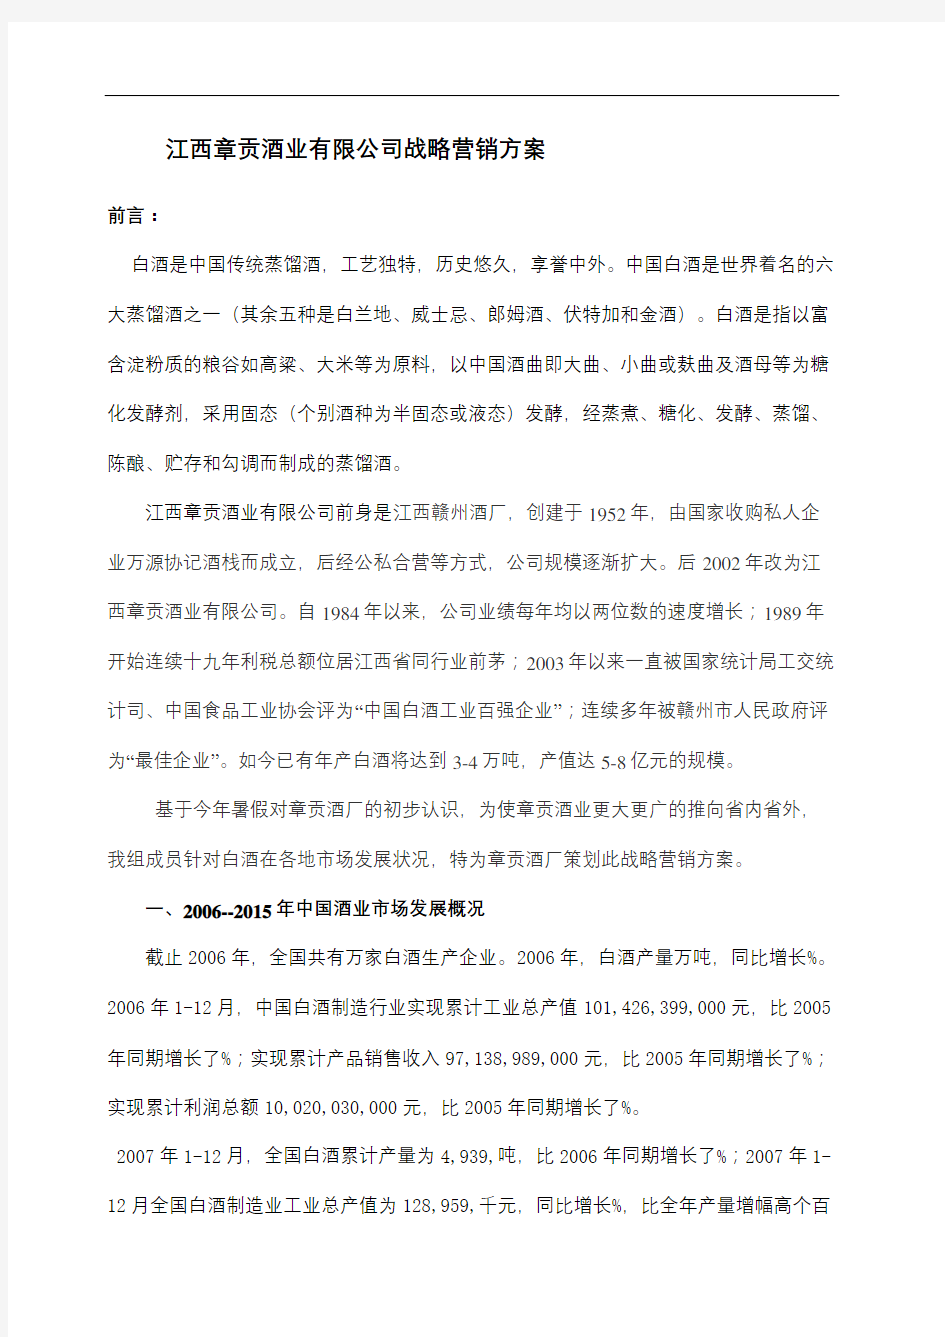 江西章贡酒业公司战略营销方案修订稿